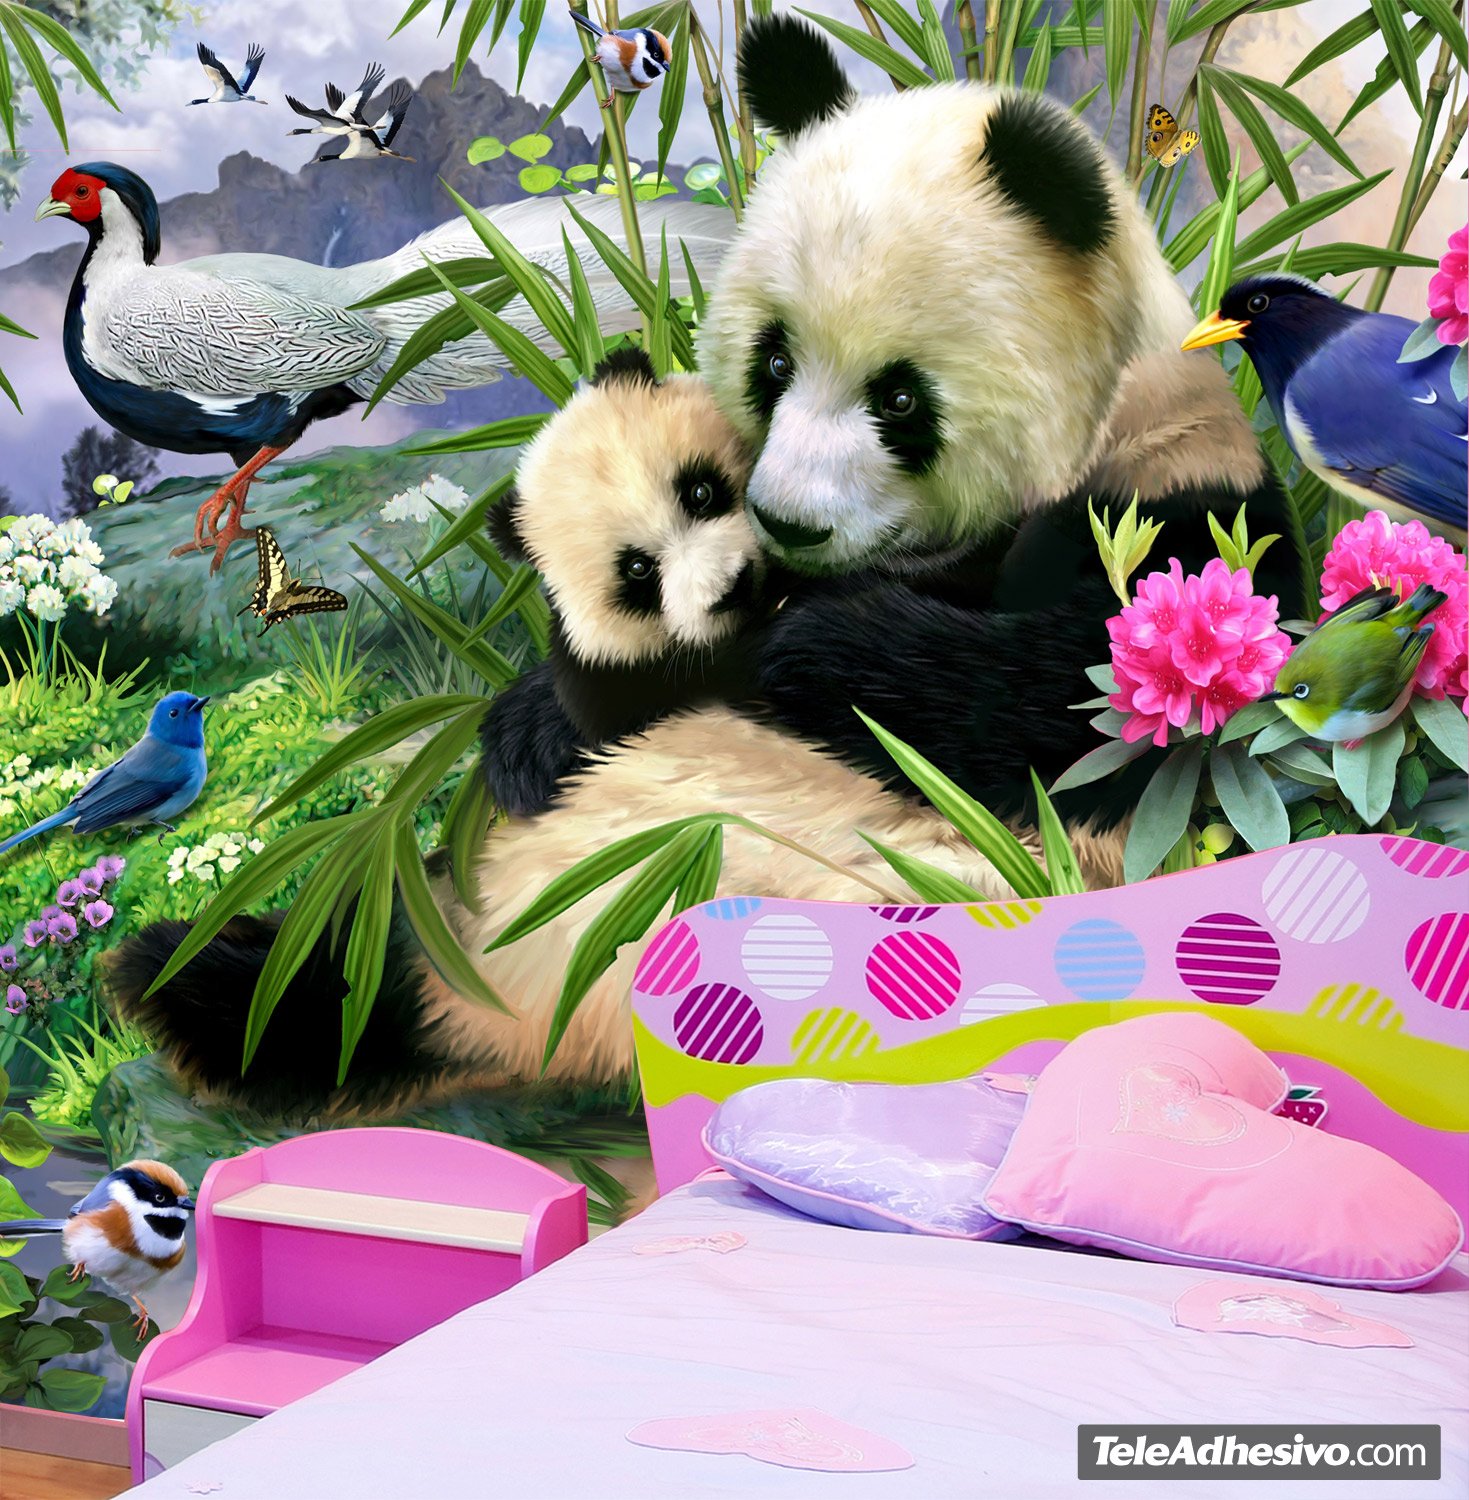 Fotomurali : Orso panda